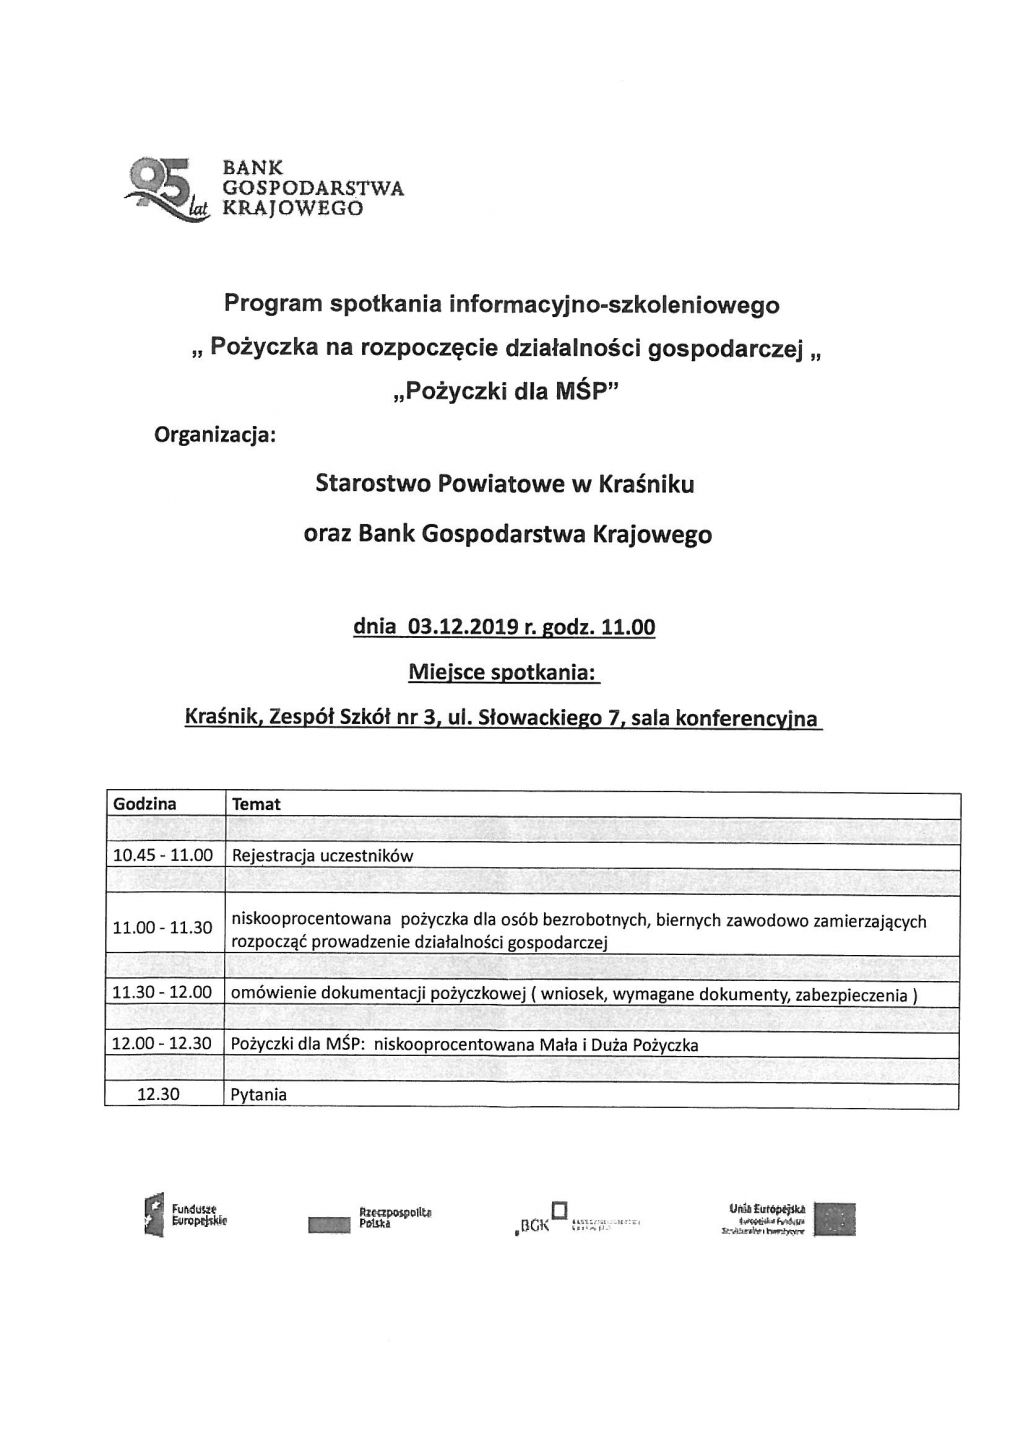 Program spotkania informacyjno-szkoleniowego "Pozyczka na rozpoczęcie działalności gospodarczej"